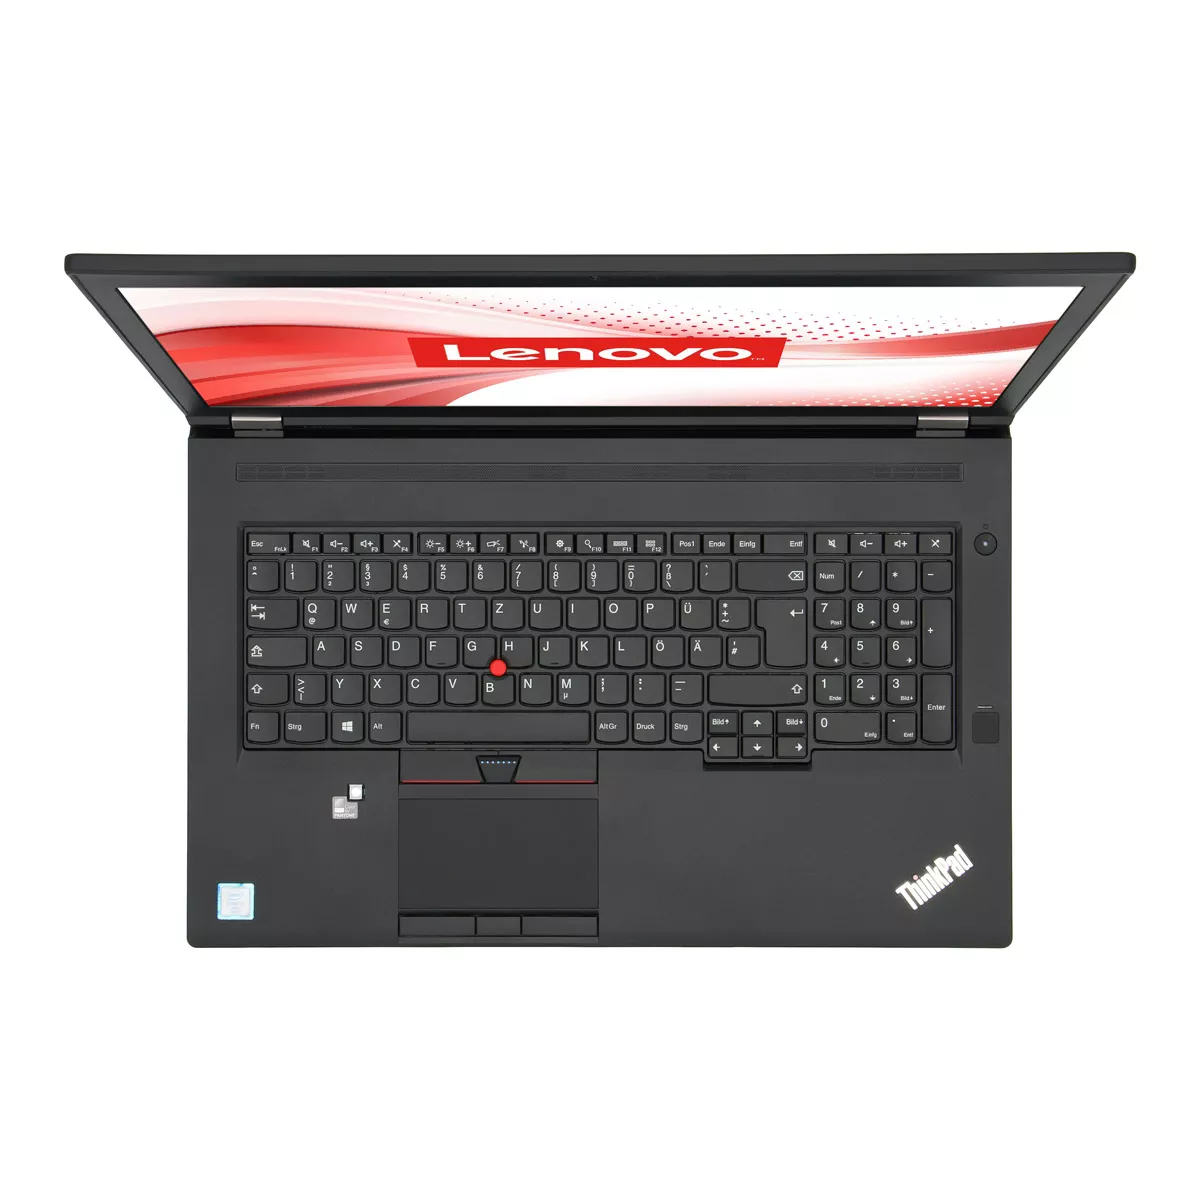 Lenovo ThinkPad P70 Core i7 6700HQ nVidia Quadro M600M 16 GB 500 GB M.2 SSD Webcam A